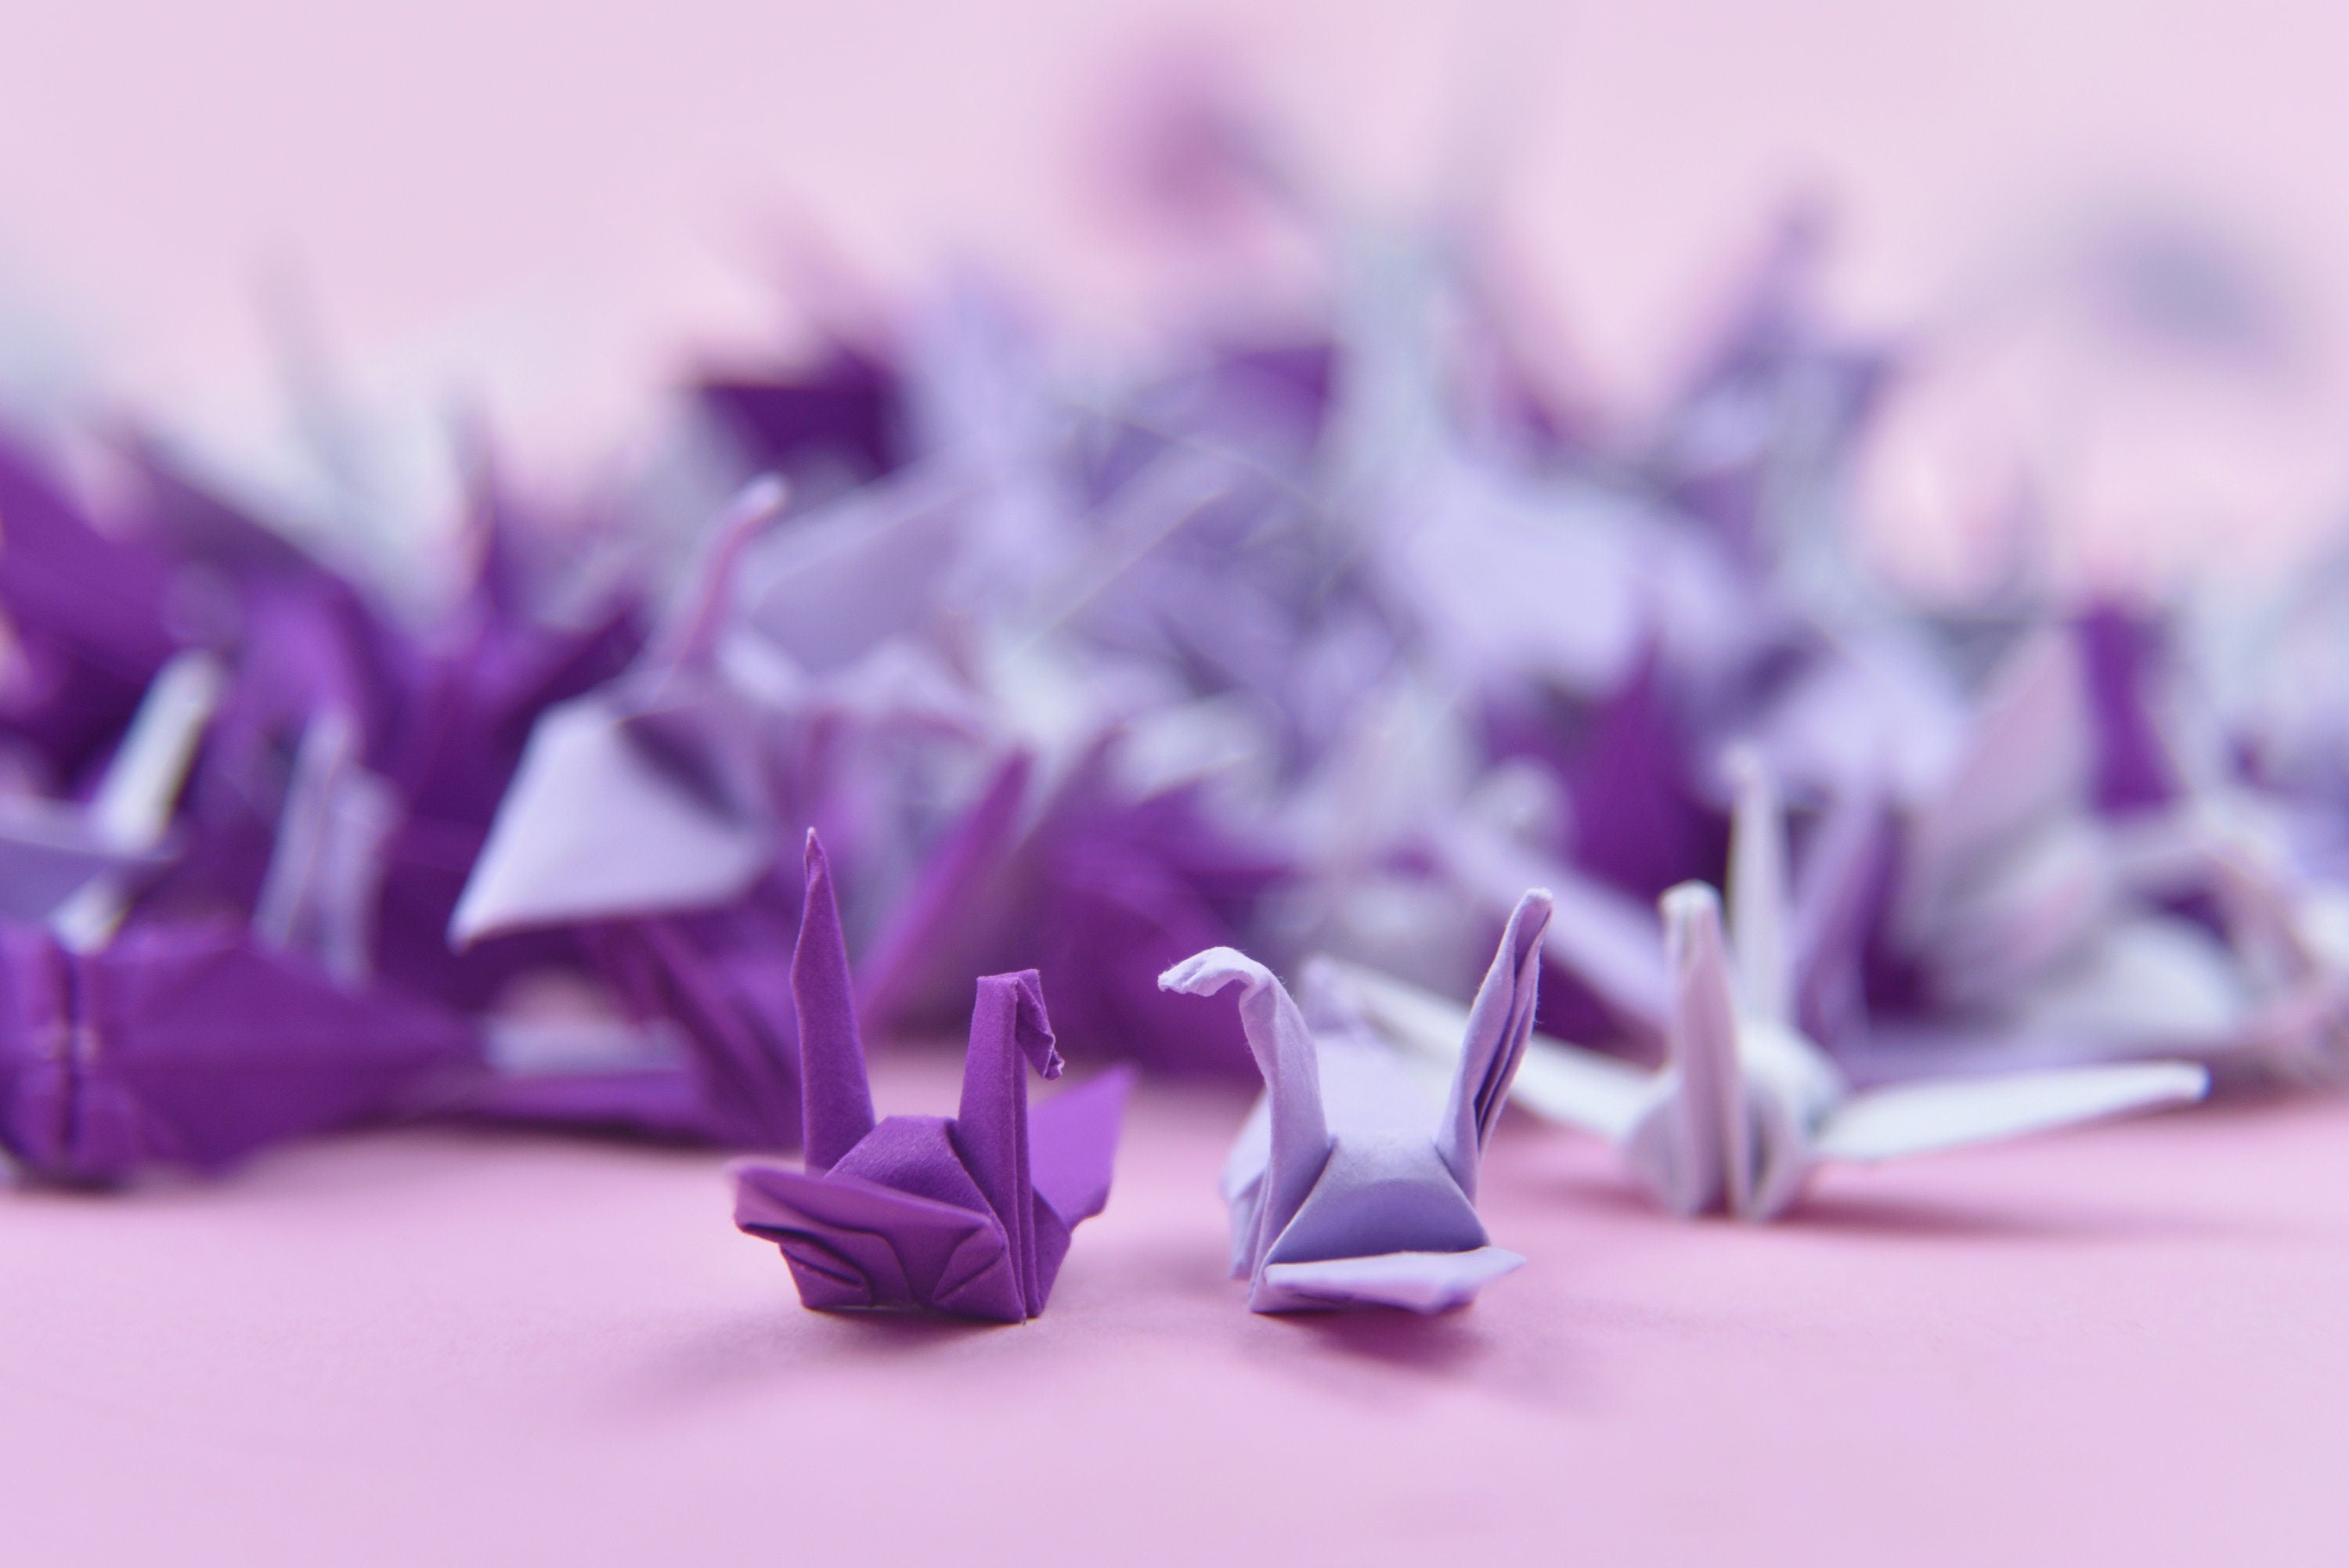 100 Origami Paper Crane Purple Shade - Origami Cranes - Prefabricado - Pequeño 1.5x1.5 pulgadas para decoración de bodas, regalo de aniversario, San Valentín